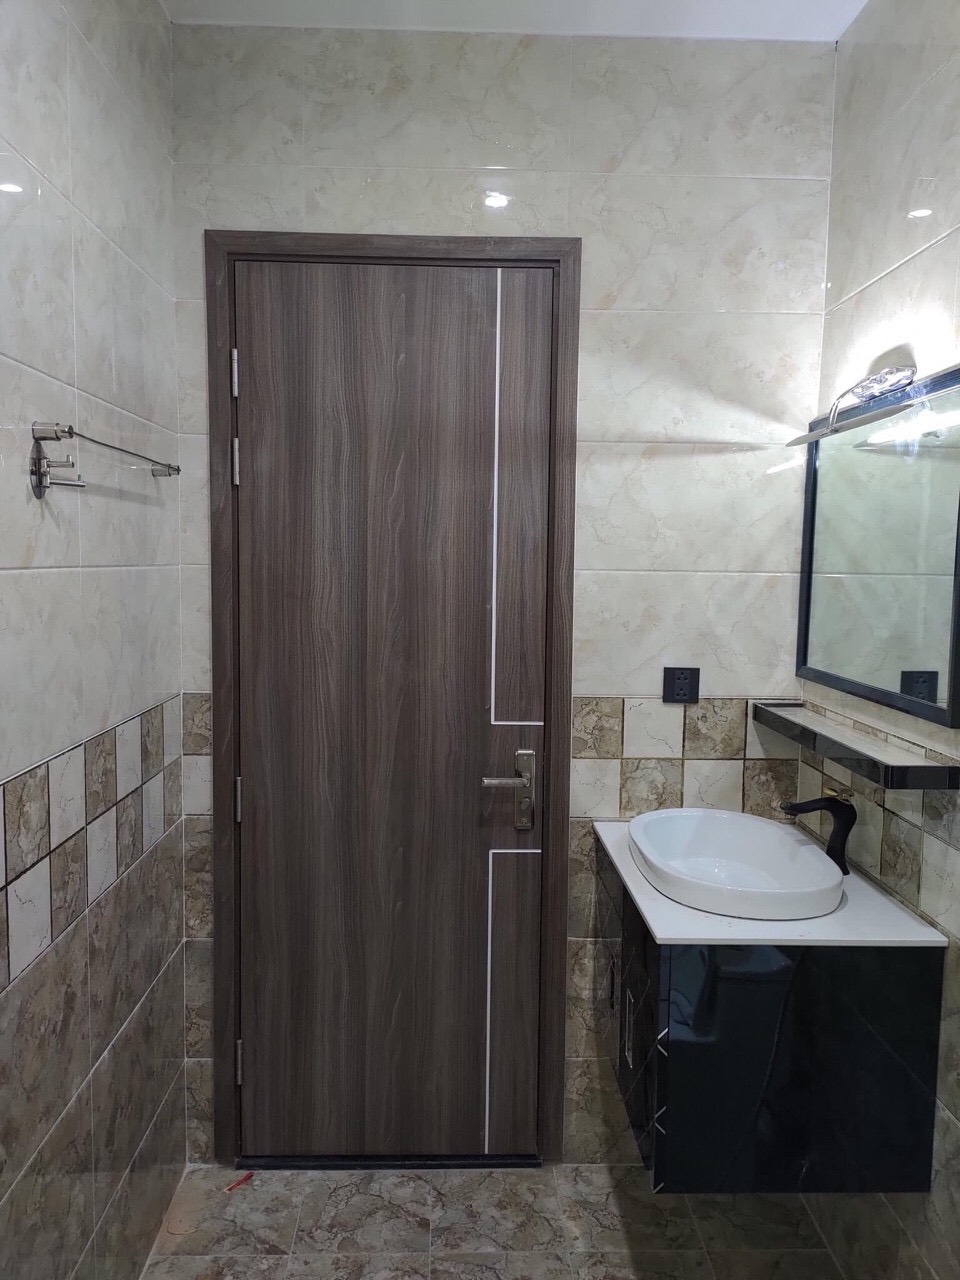 Cửa nhựa gỗ Composite - cửa dùng cho nhà vệ sinh.